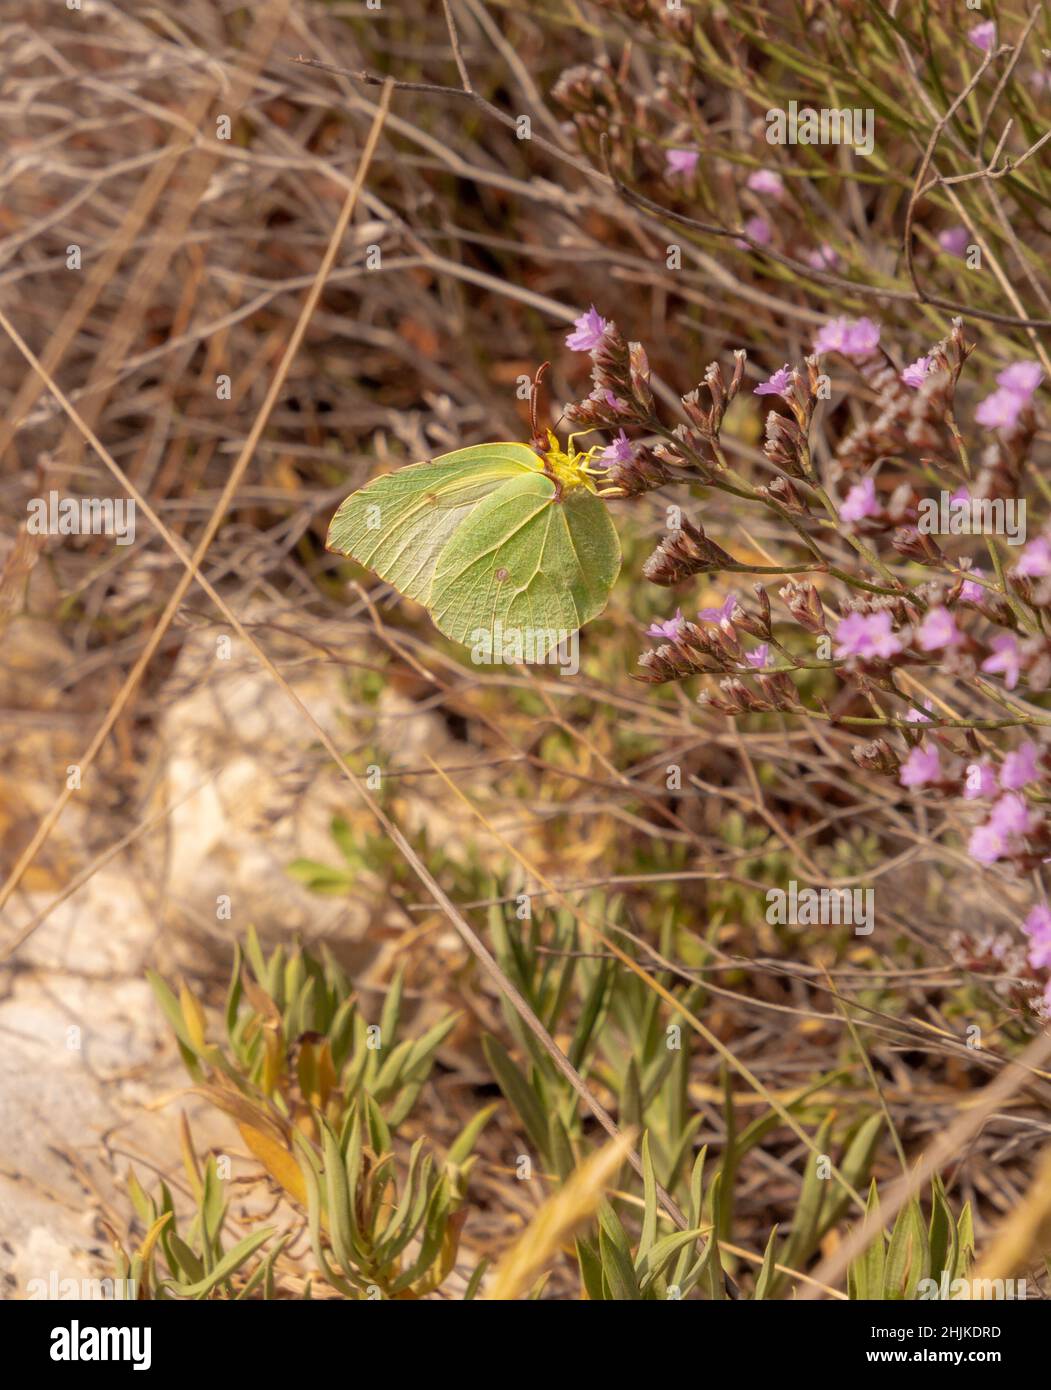 Primer plano de una mariposa Cleopatra hembra (gonepteryx cleopatra itálica) en el Parque Nacional Gargano, Apulia, Italia; protección ambiental libre de pesticidas Foto de stock